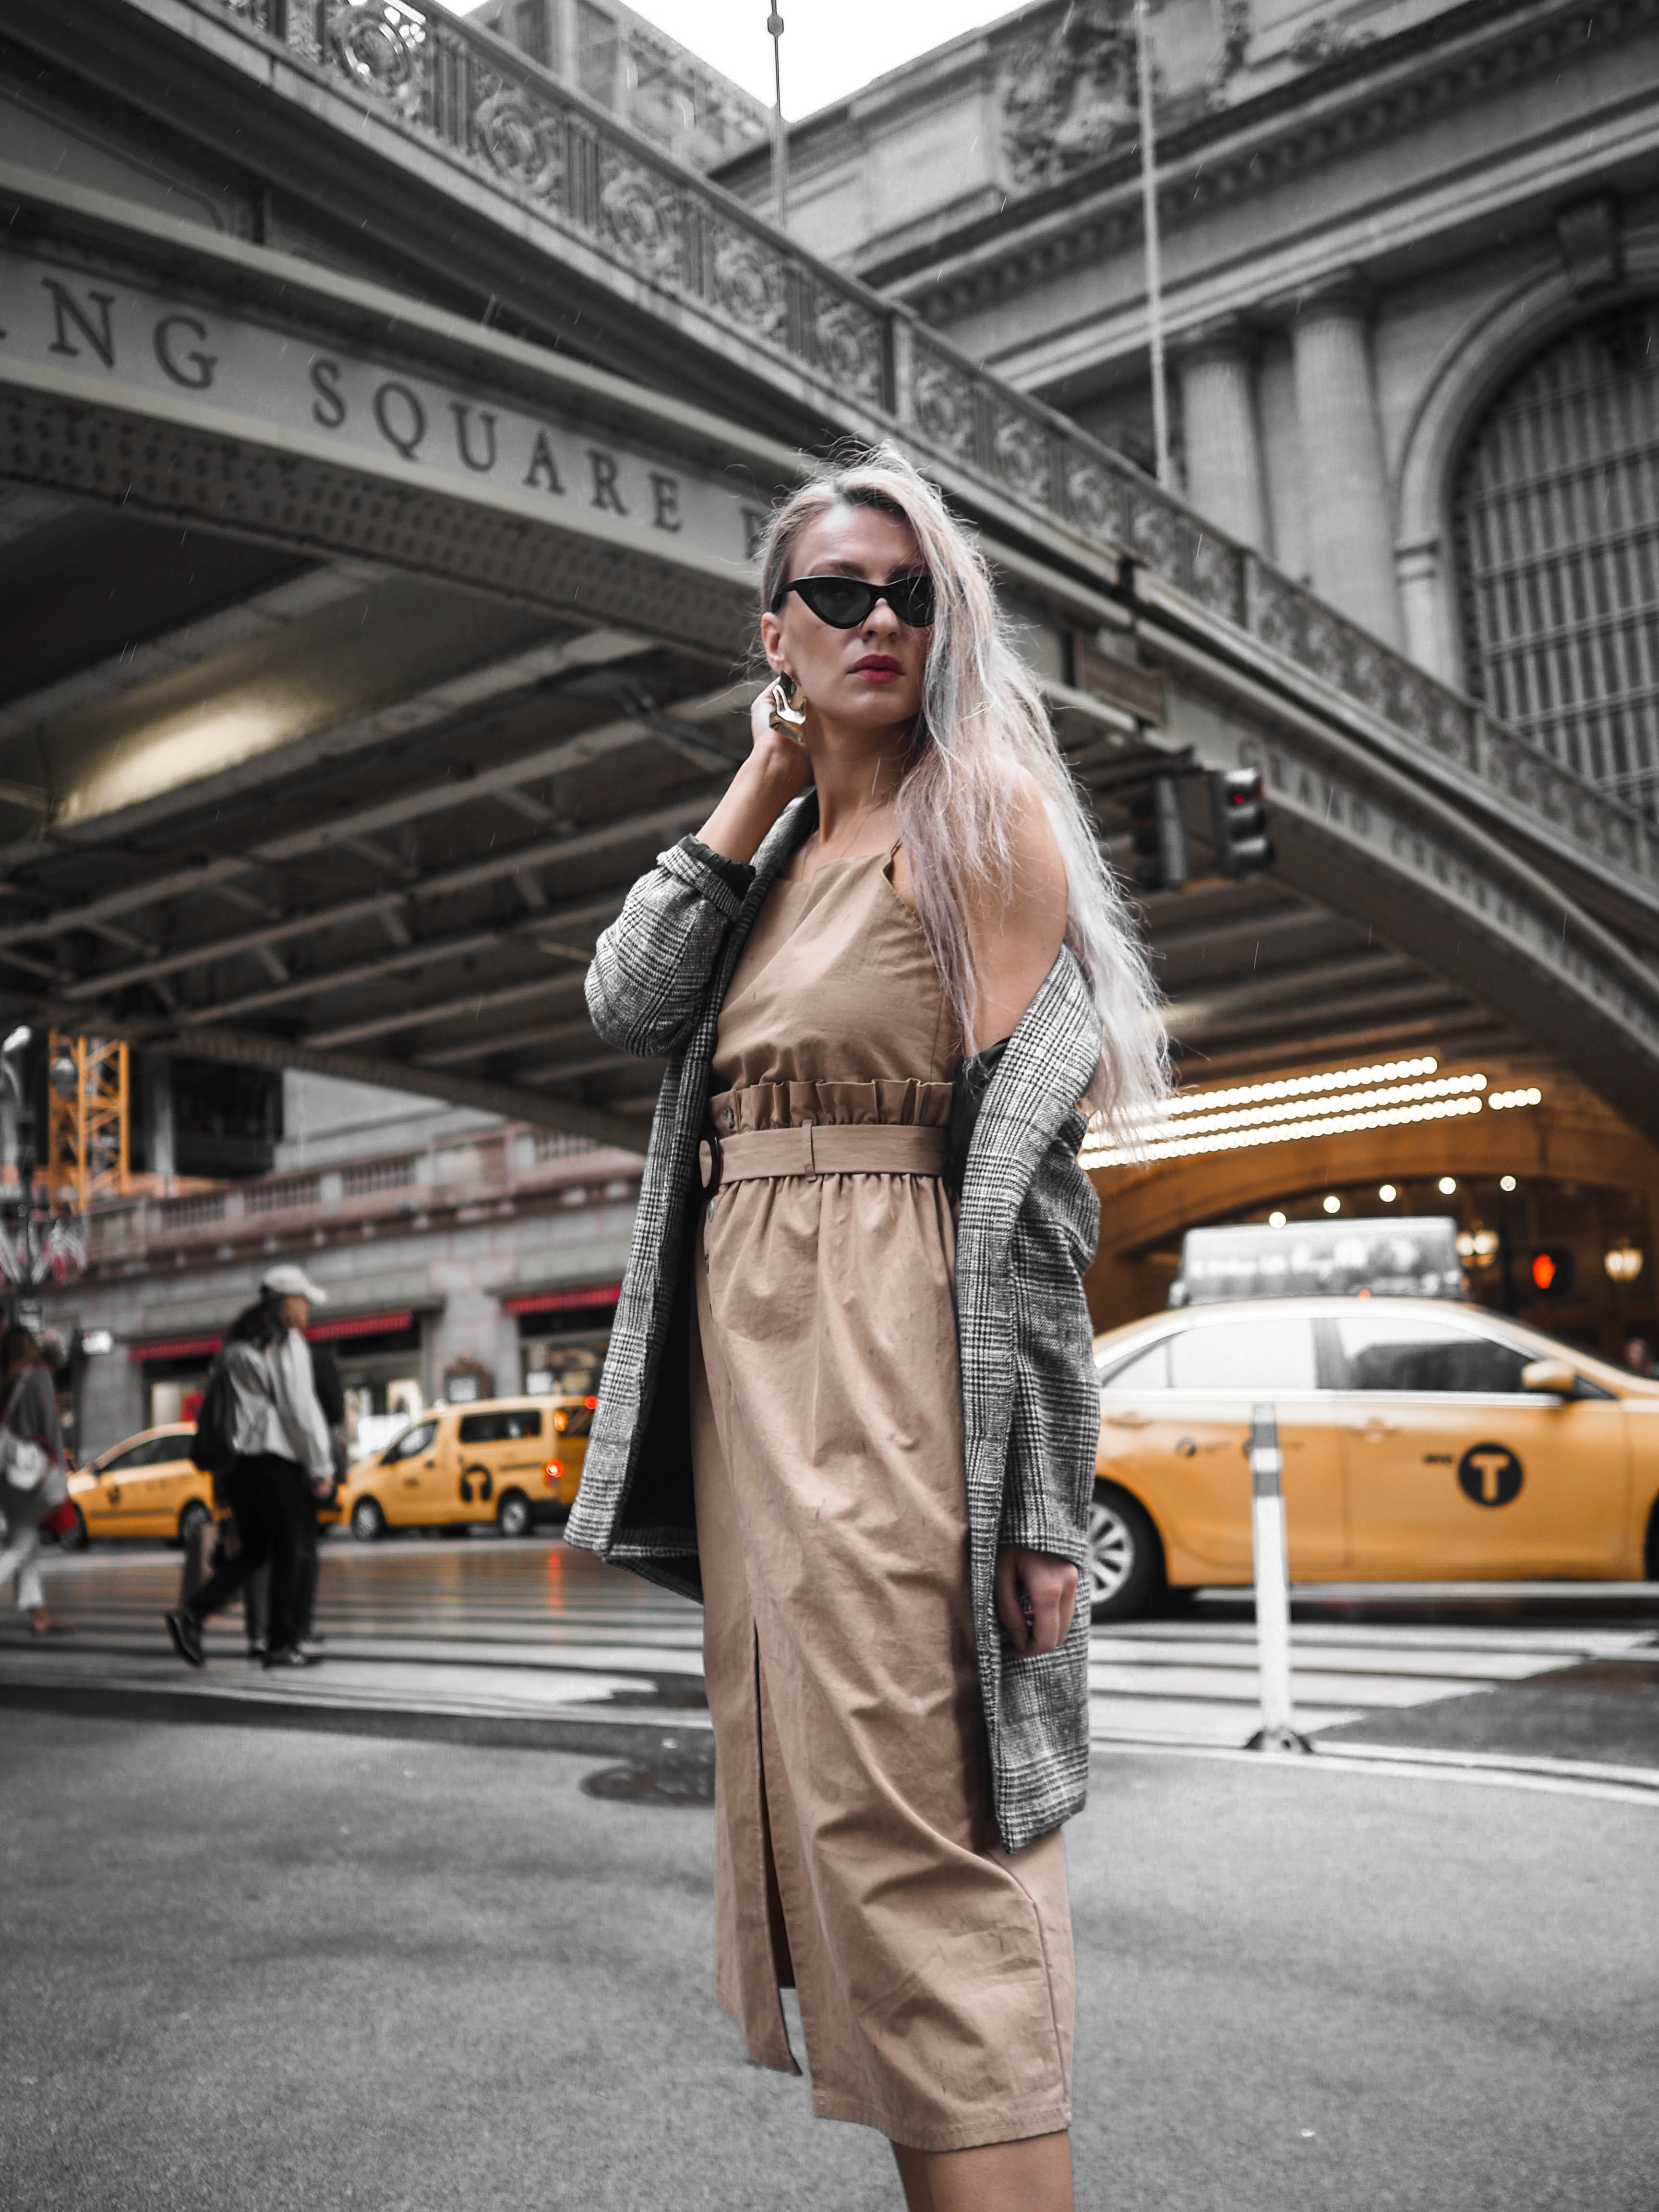 MON MODE / Fashion Blogger / Toronto Blogger | NYFW | Grand Central | Confidence